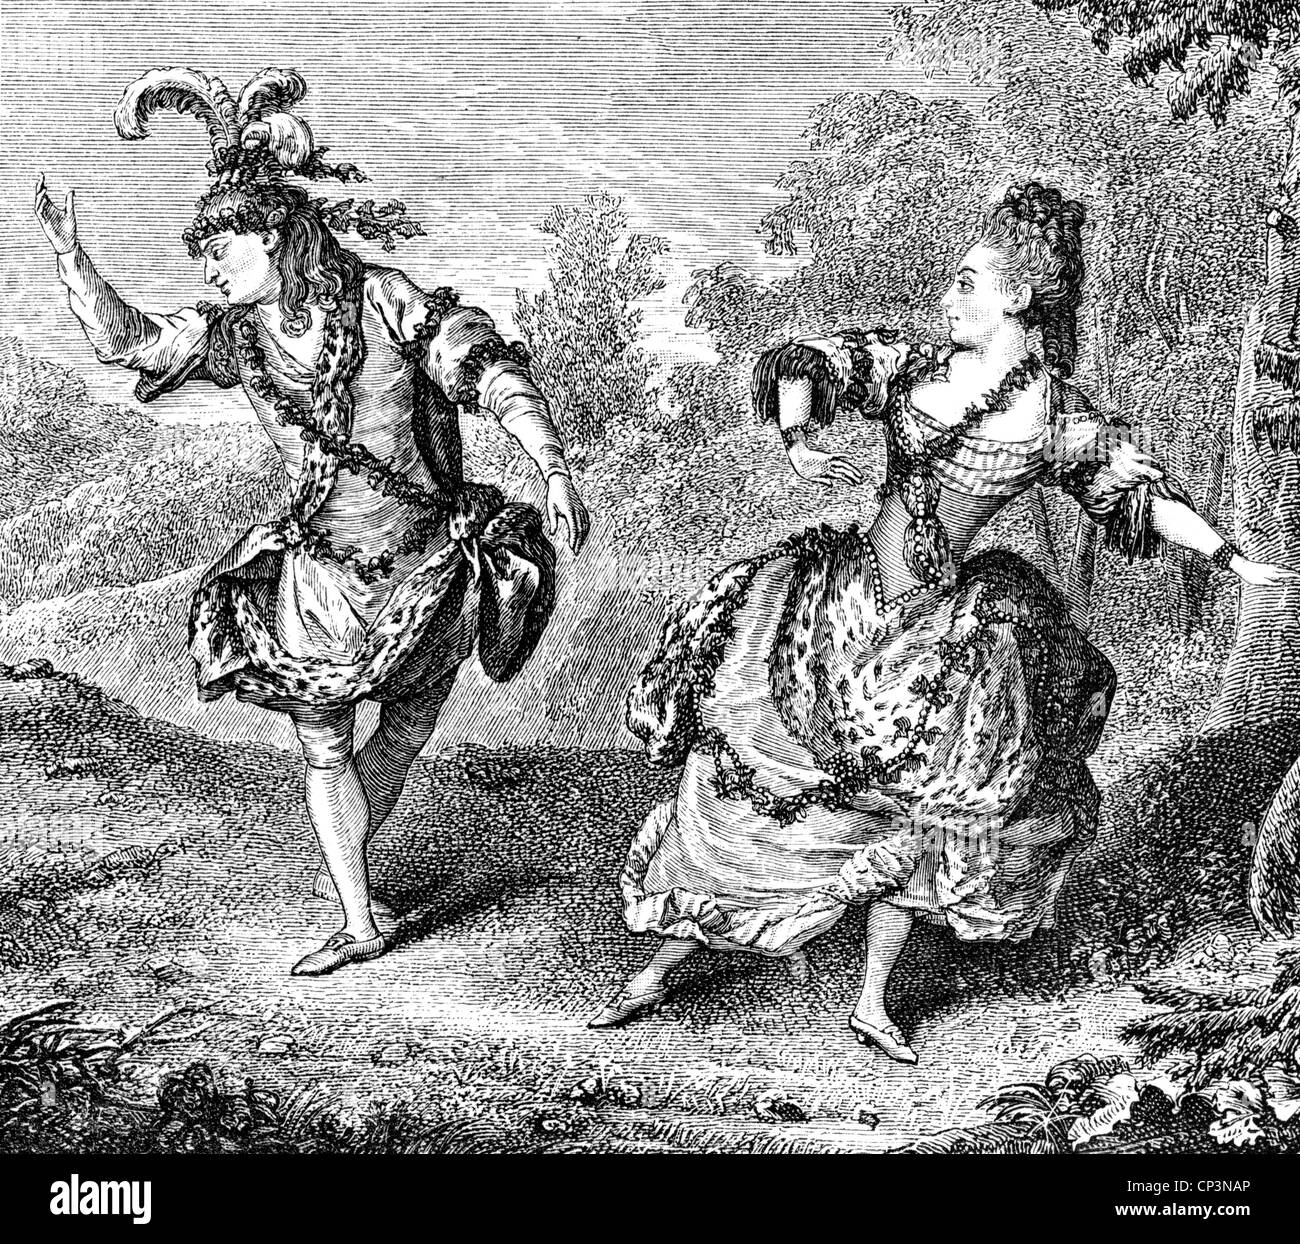 Dauberval, Jean, 19.8.1742 - 14.2.1806, danseuse française, pleine longueur, avec Marie Allard, dans l'opéra 'Cylvie', gravure en bois, XIXe siècle, après peinture de Carmontelle, 1766, Banque D'Images